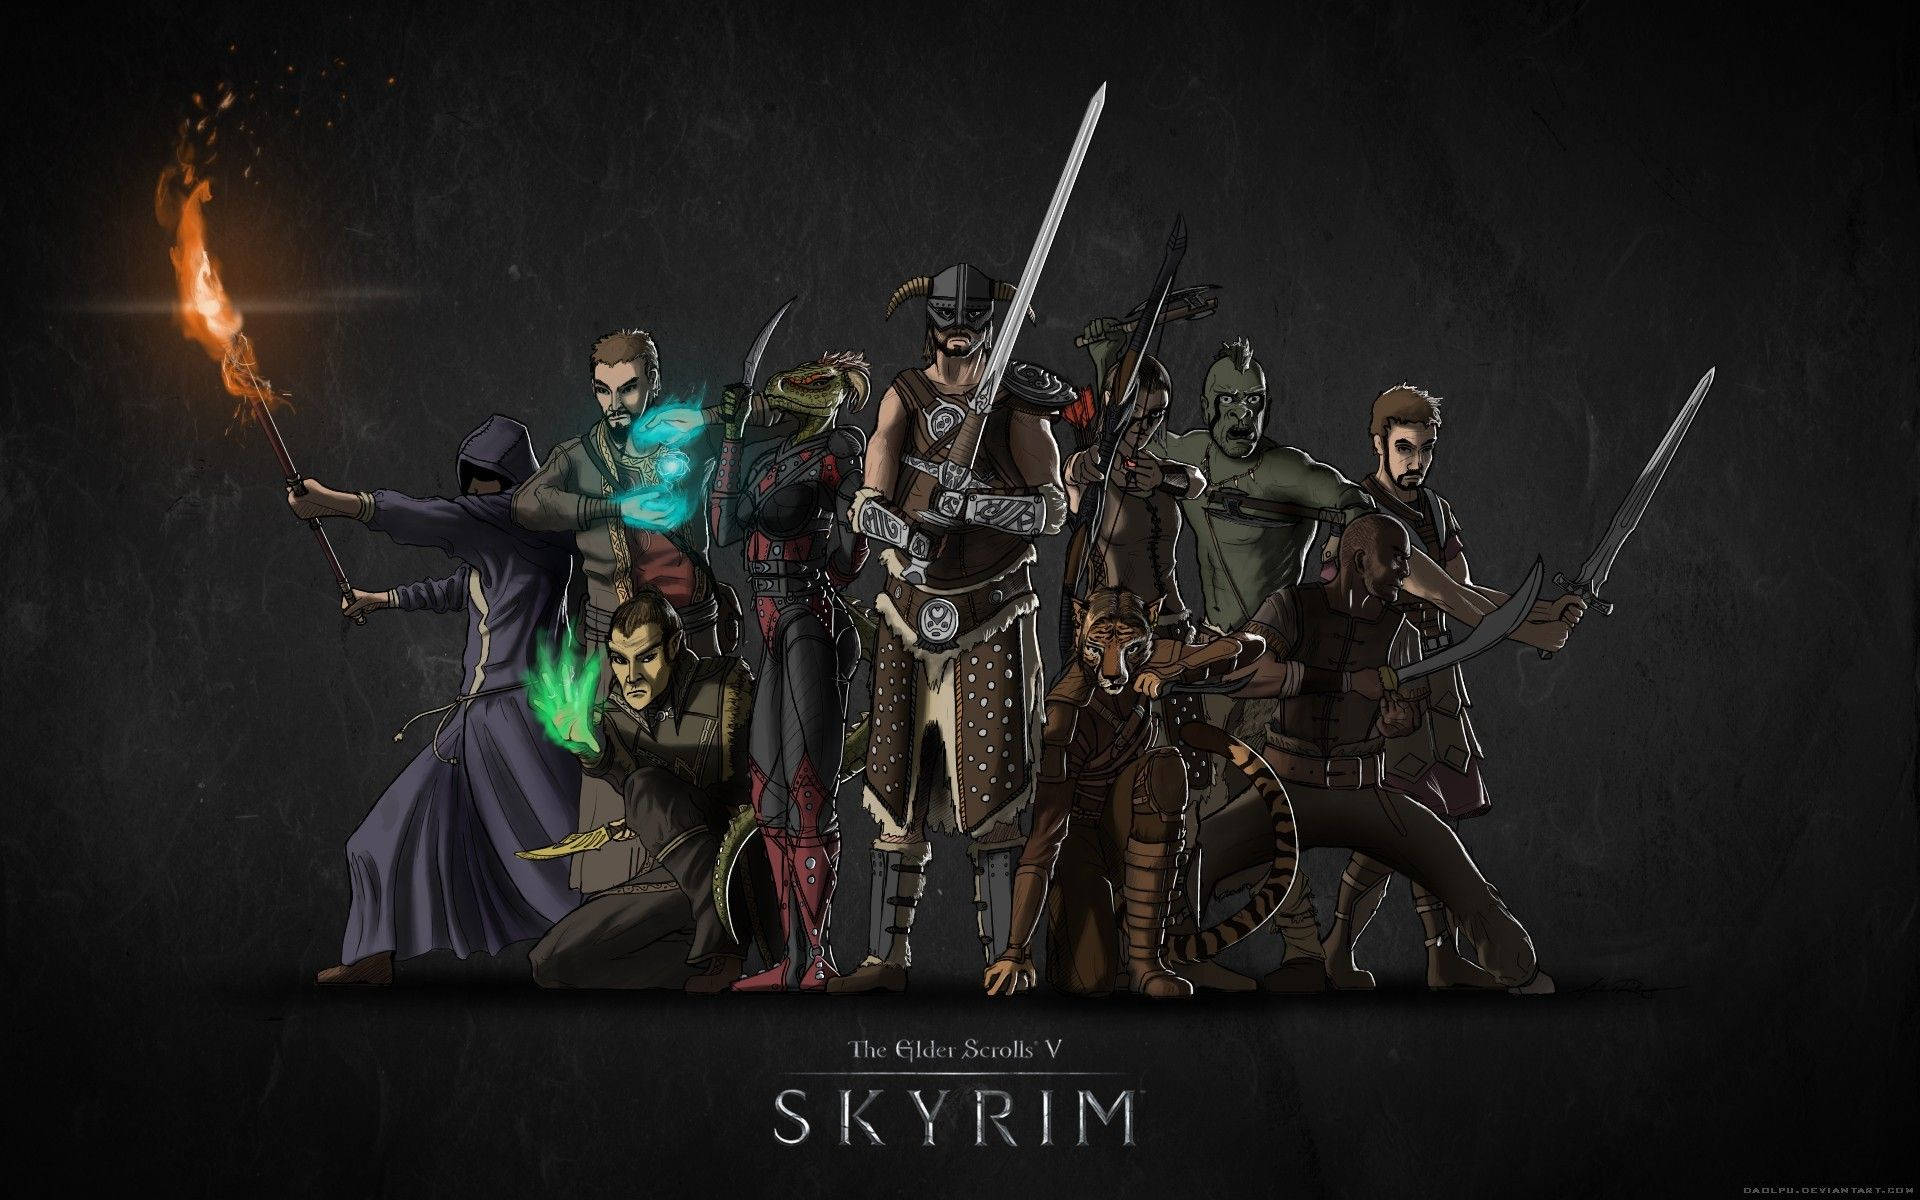 The Elder Scrolls Skyrim Team